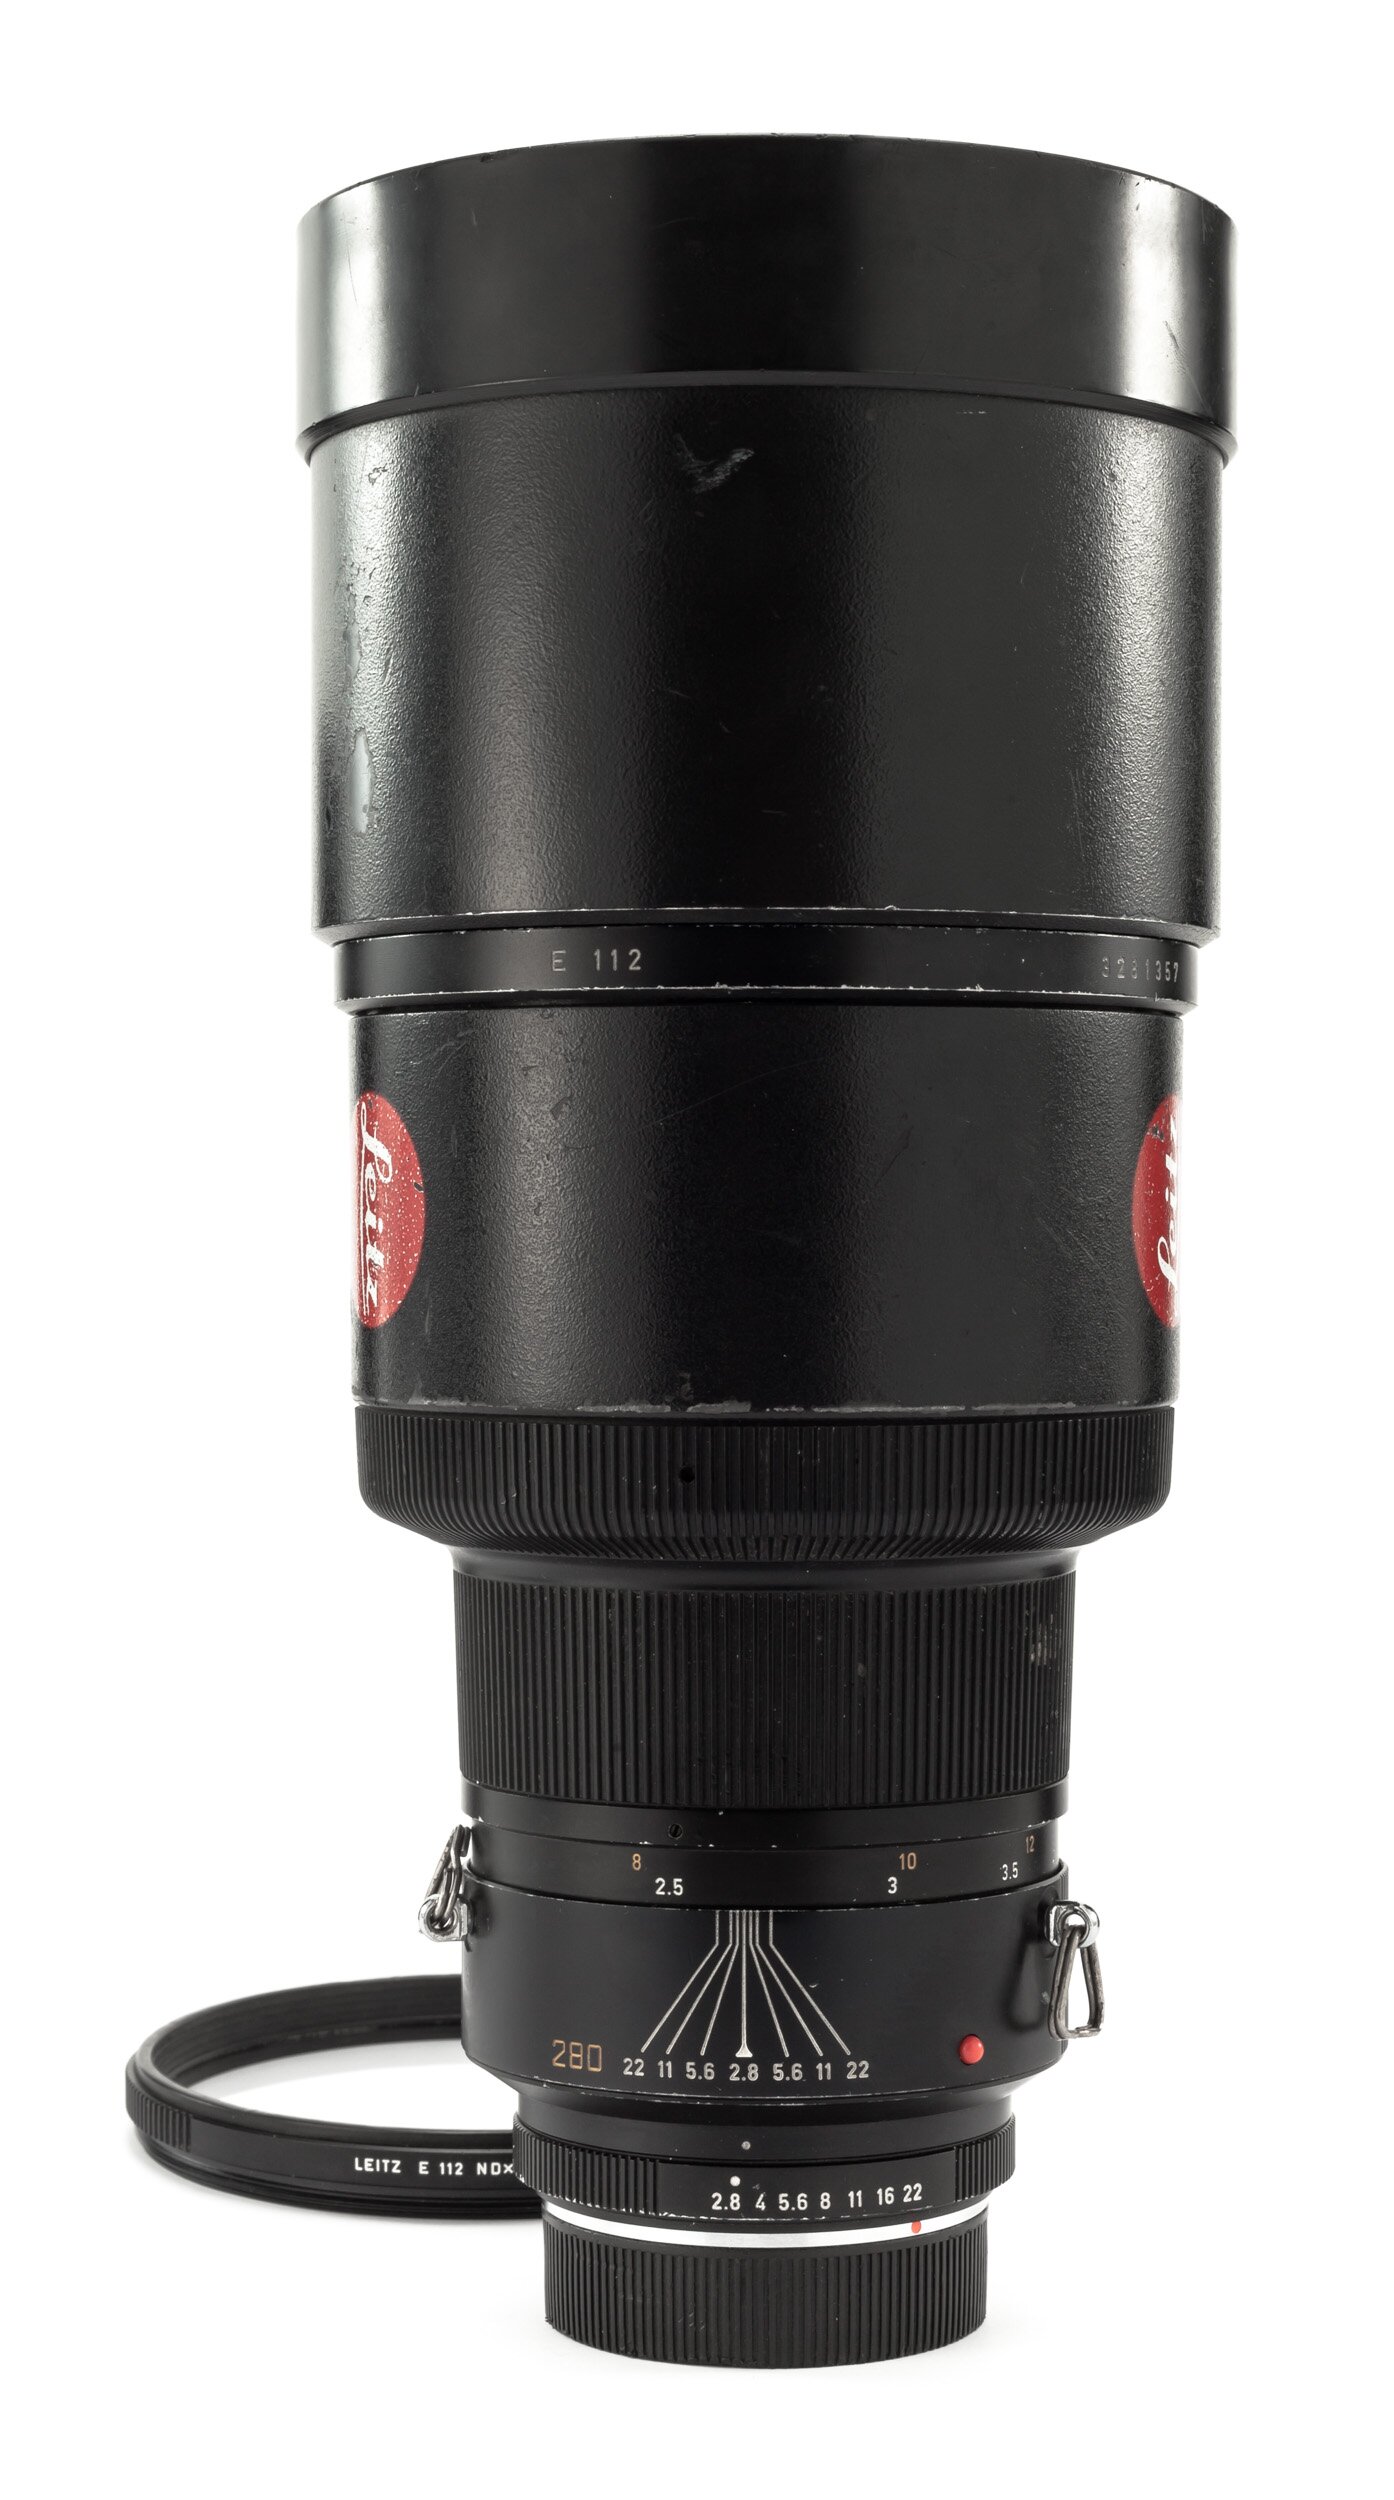 Leica 280mm 1:2,8 Apo-Telyt-R ROM E112